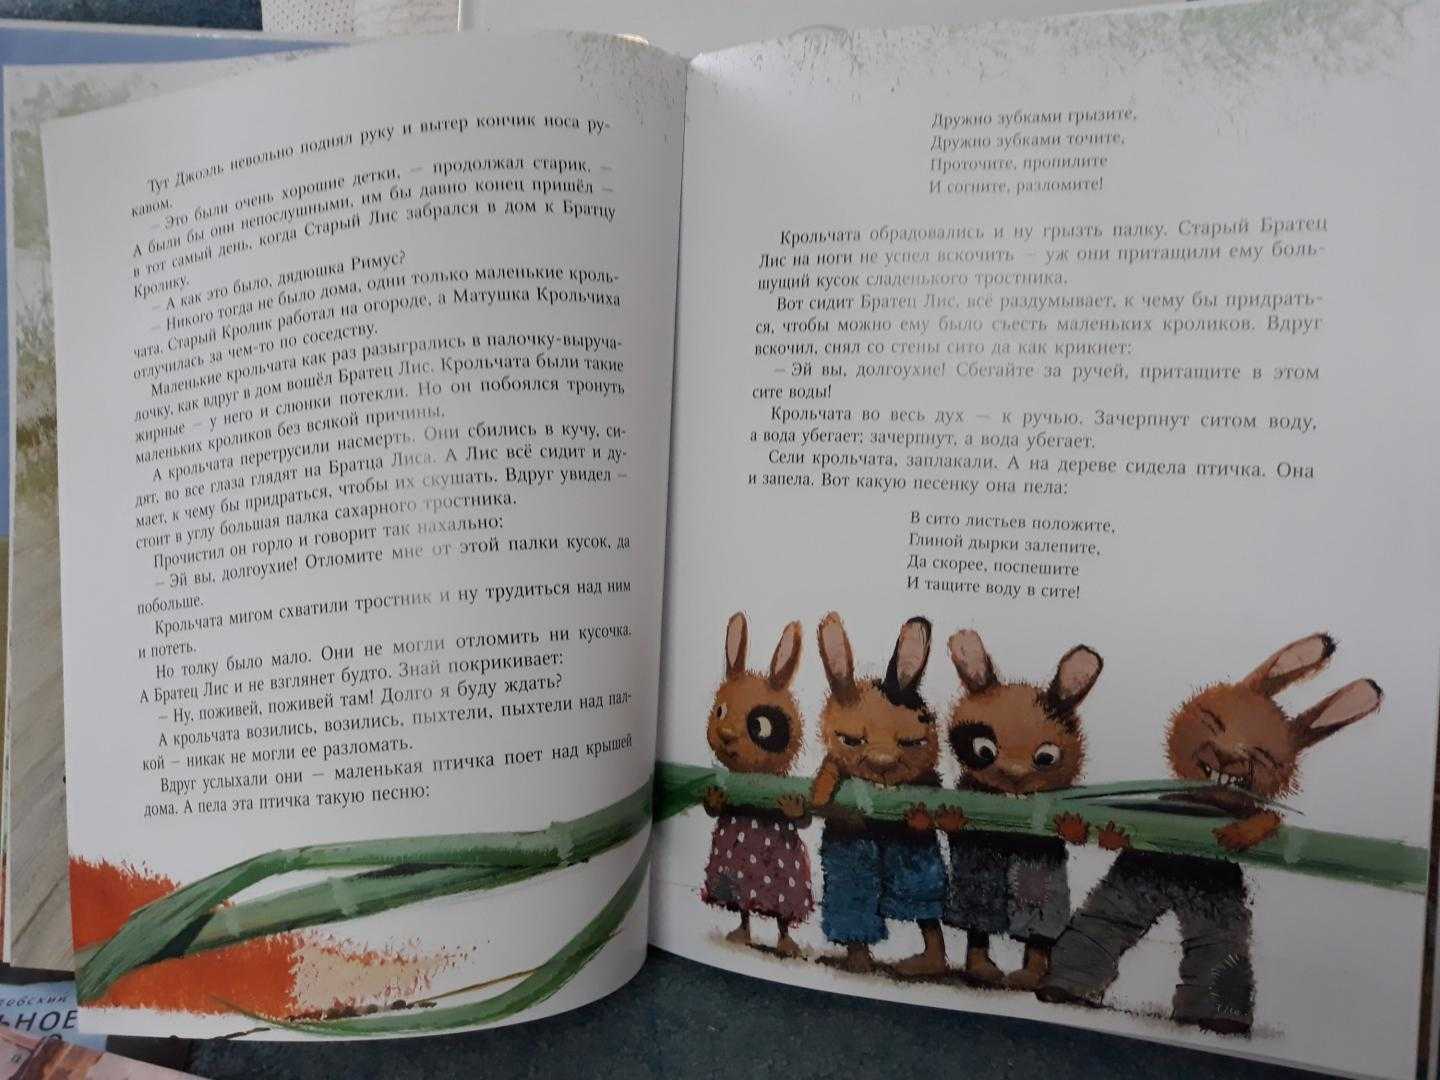 Сказка про маленьких крольчат - Харрис ДЧ Сказка про маленьких послушных крольчат, которые слушали советы птички и не дали повода Братцу Лису их съесть